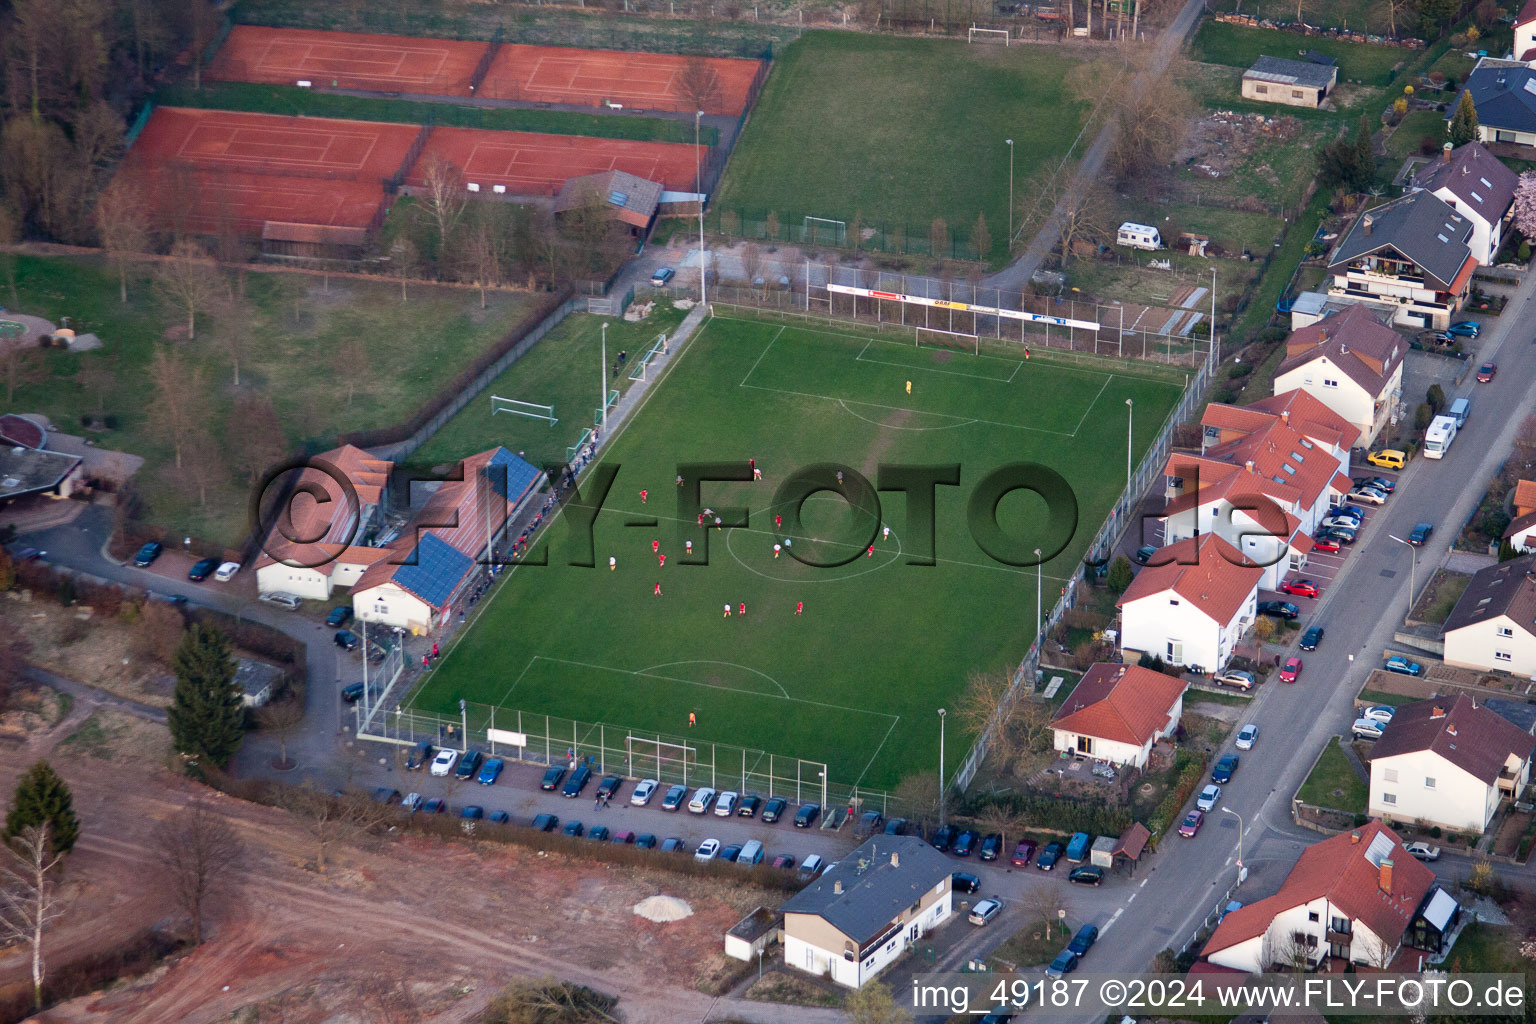 Sportplätze im Ortsteil Ingenheim in Billigheim-Ingenheim im Bundesland Rheinland-Pfalz, Deutschland aus der Luft betrachtet